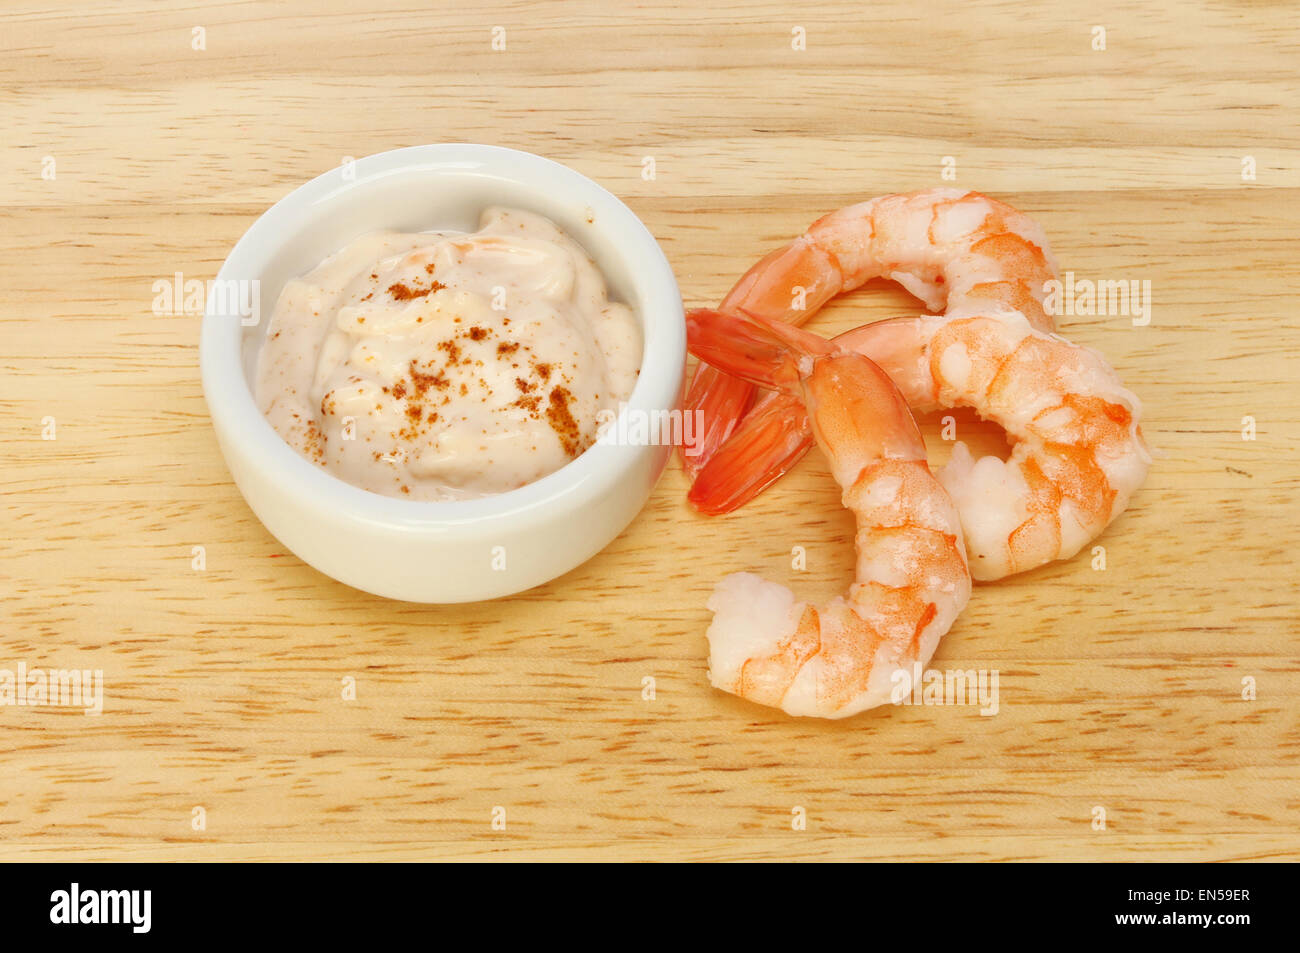 Crevettes fantail avec sauce aux fruits de mer sur une planche en bois Banque D'Images